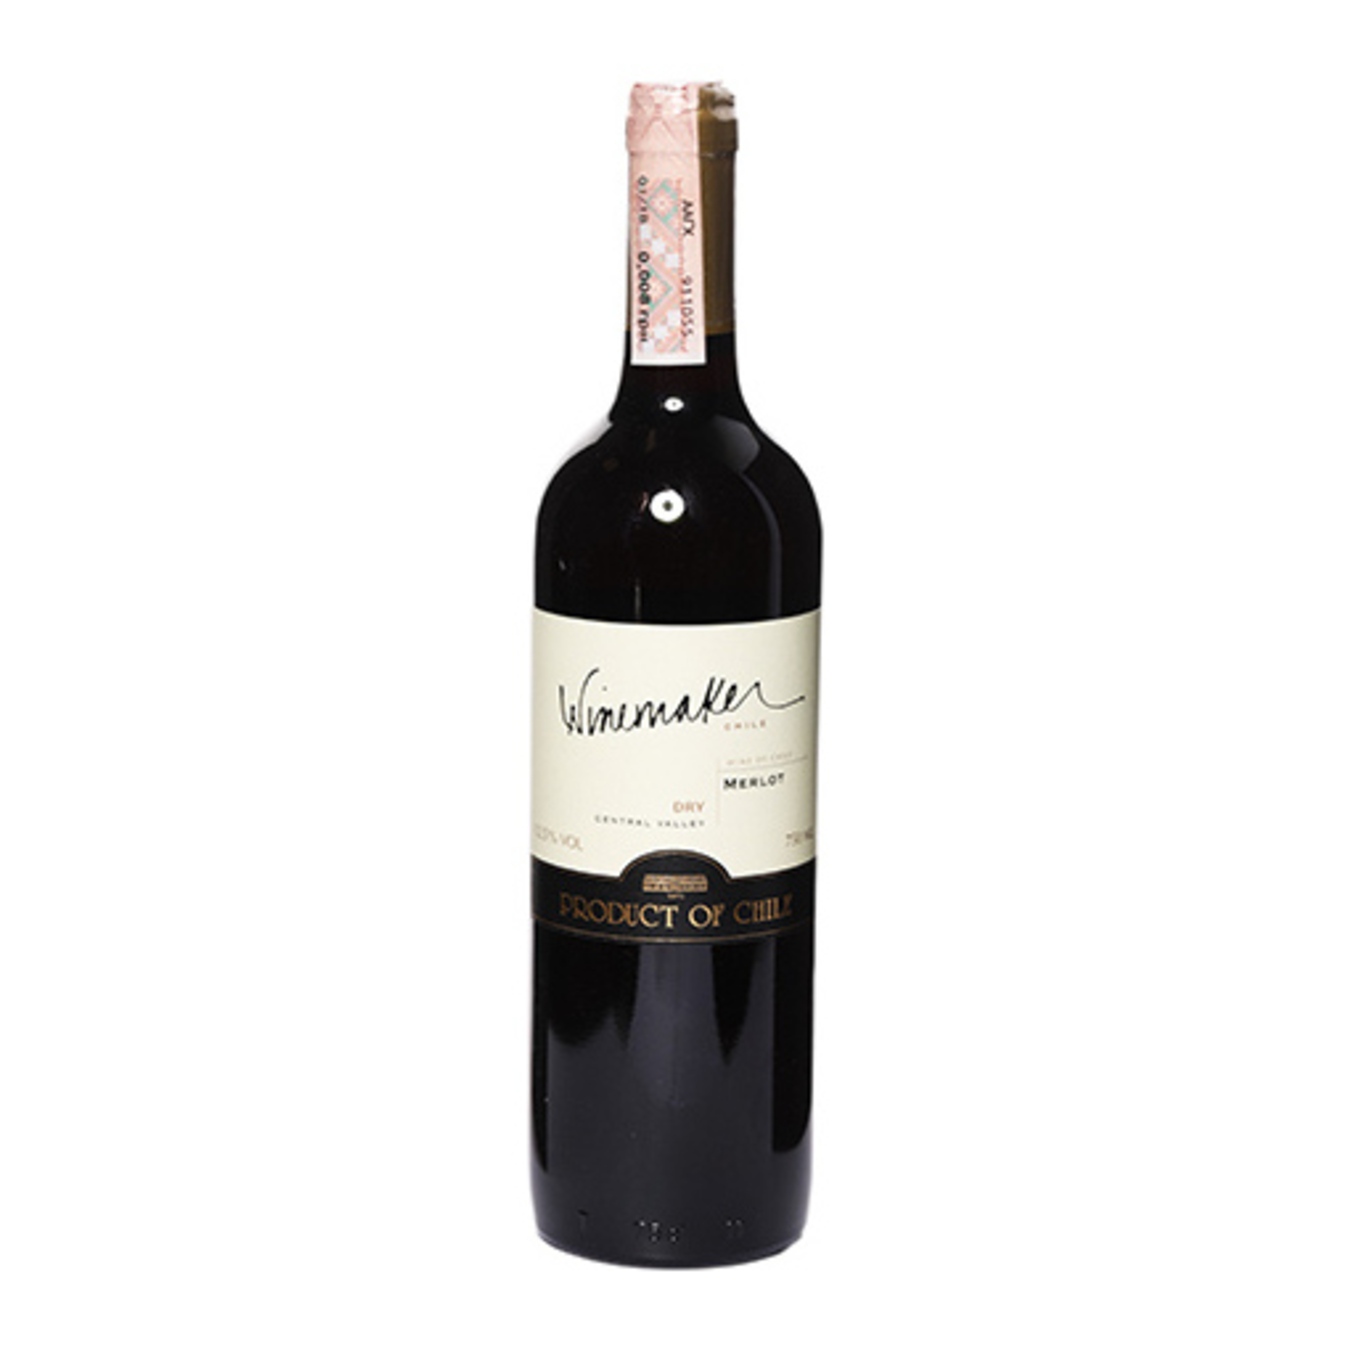 Вино Winemaker Merlot червоне сухе 13% 0,75л